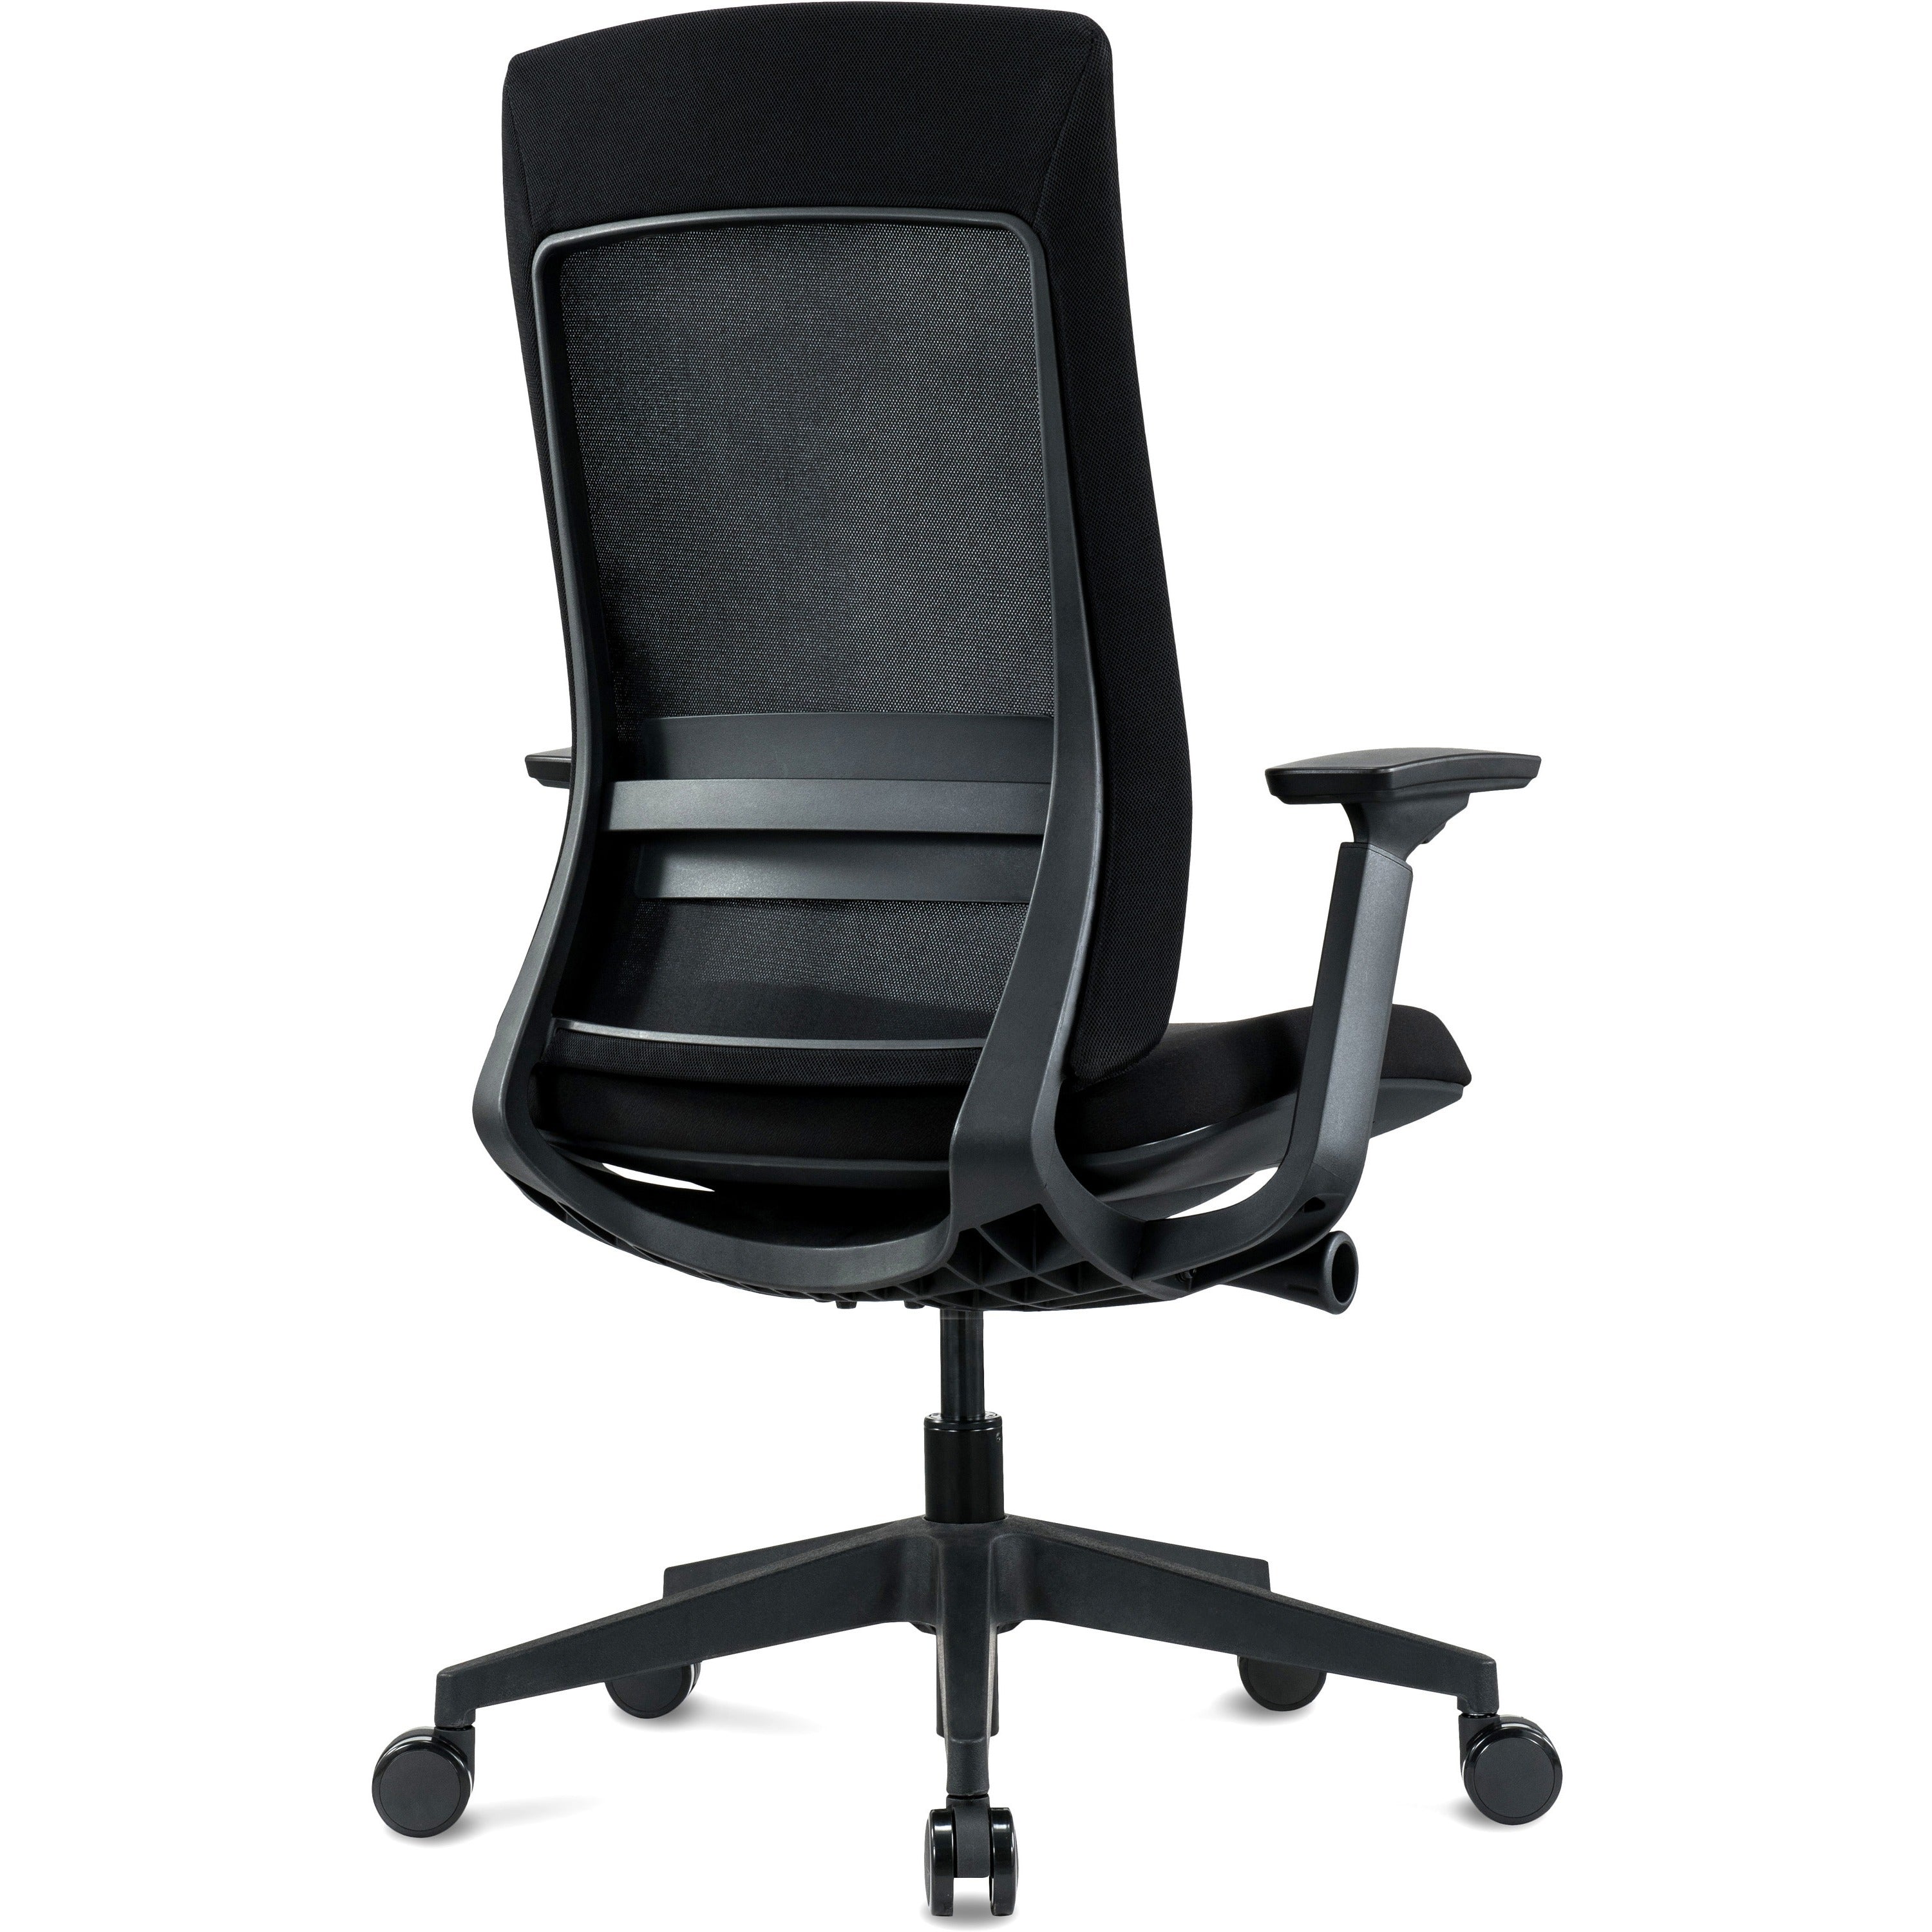 eurotech-elevate-chair-black-fabric-seat-black-mesh-back-black-frame-5-star-base-armrest-1-each_eutelv2blkfsblk - 4